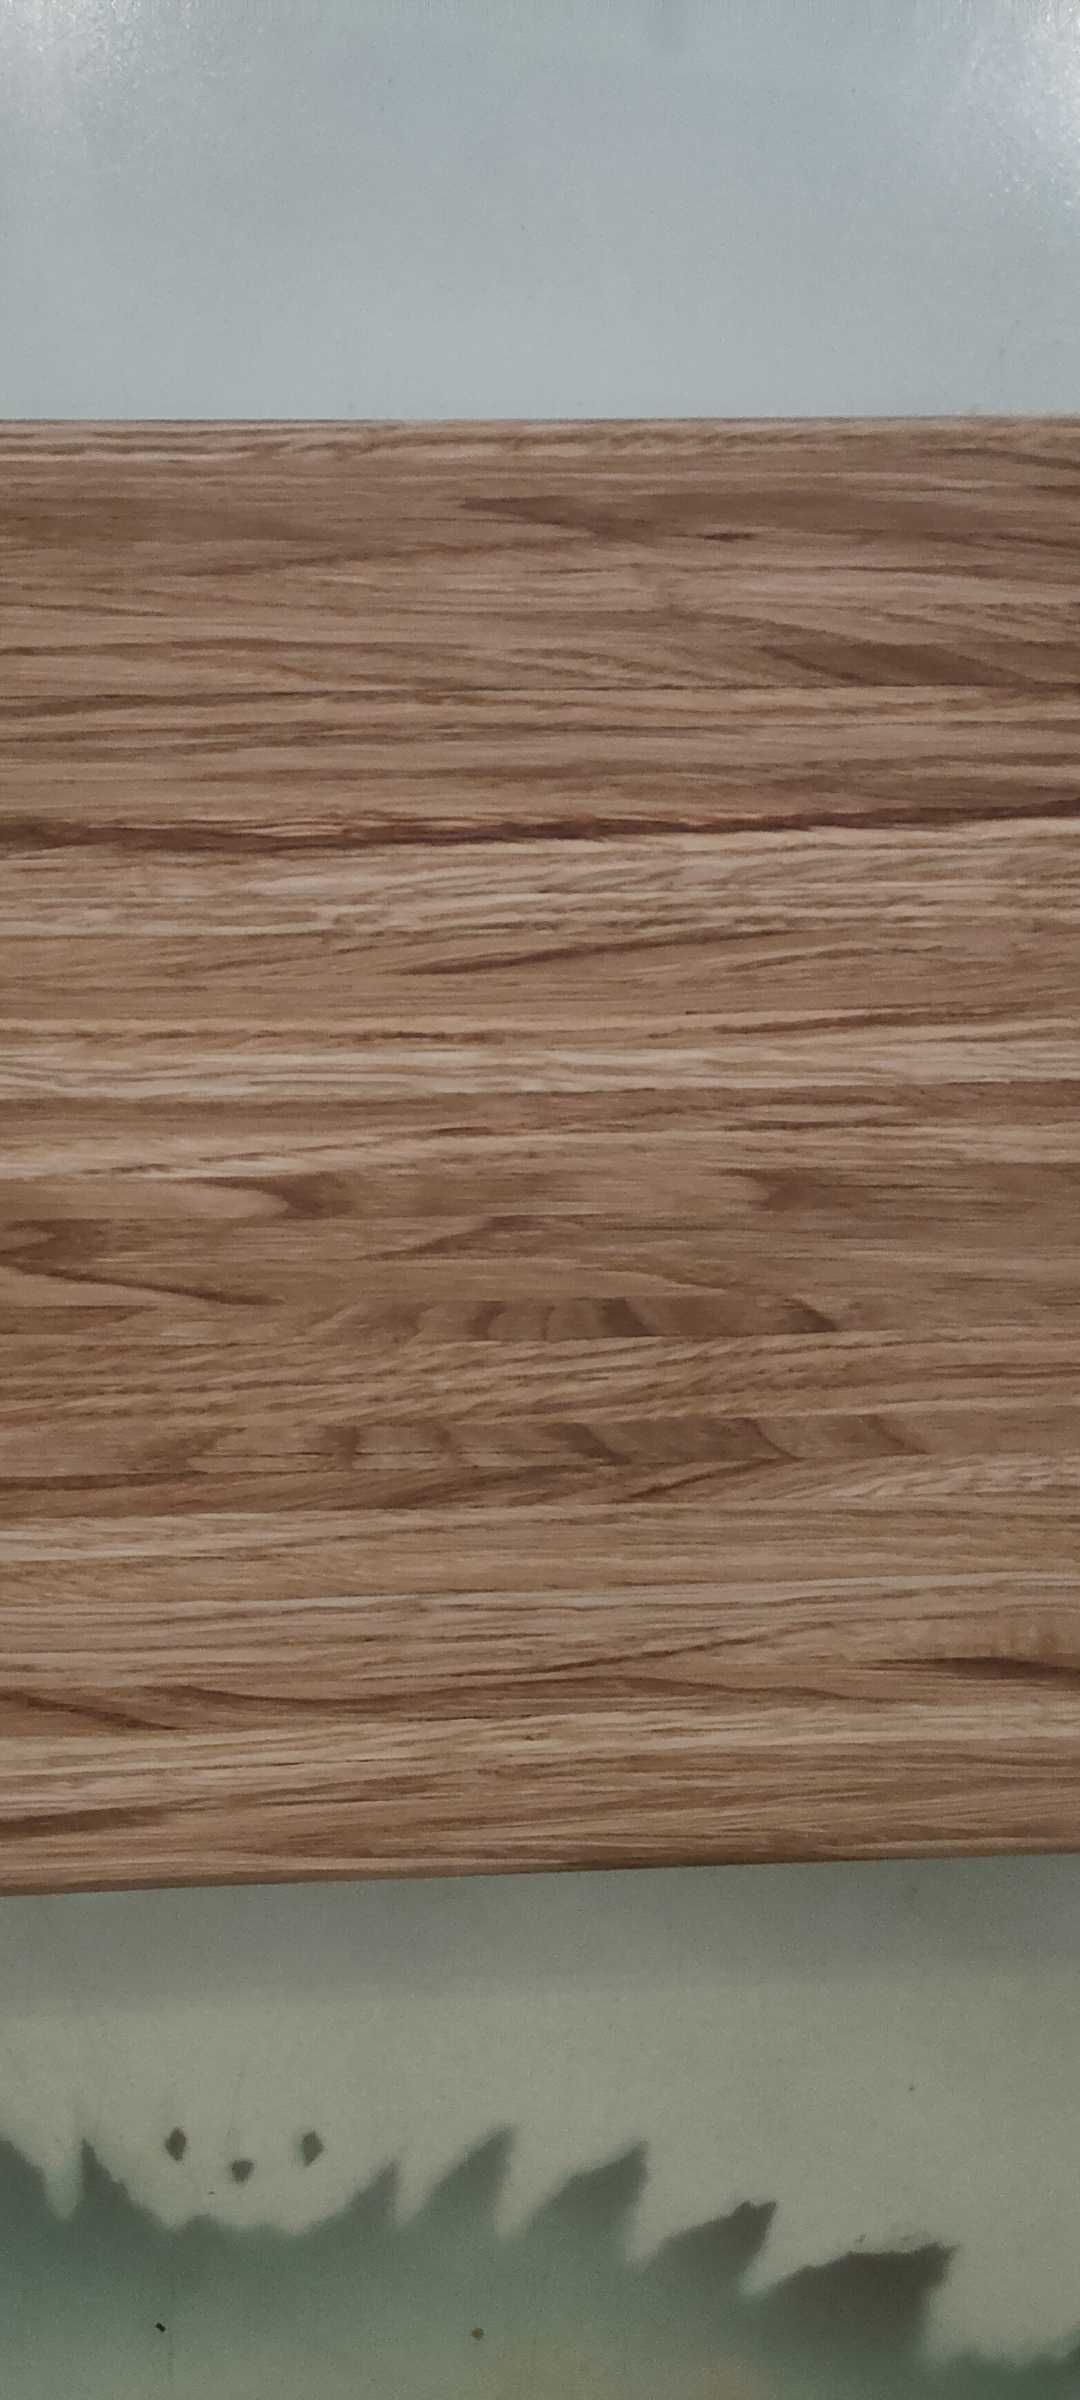 DESKA DĘBOWA blok do krojenia, drewniana deska kuchenna 40x30x4 CM.